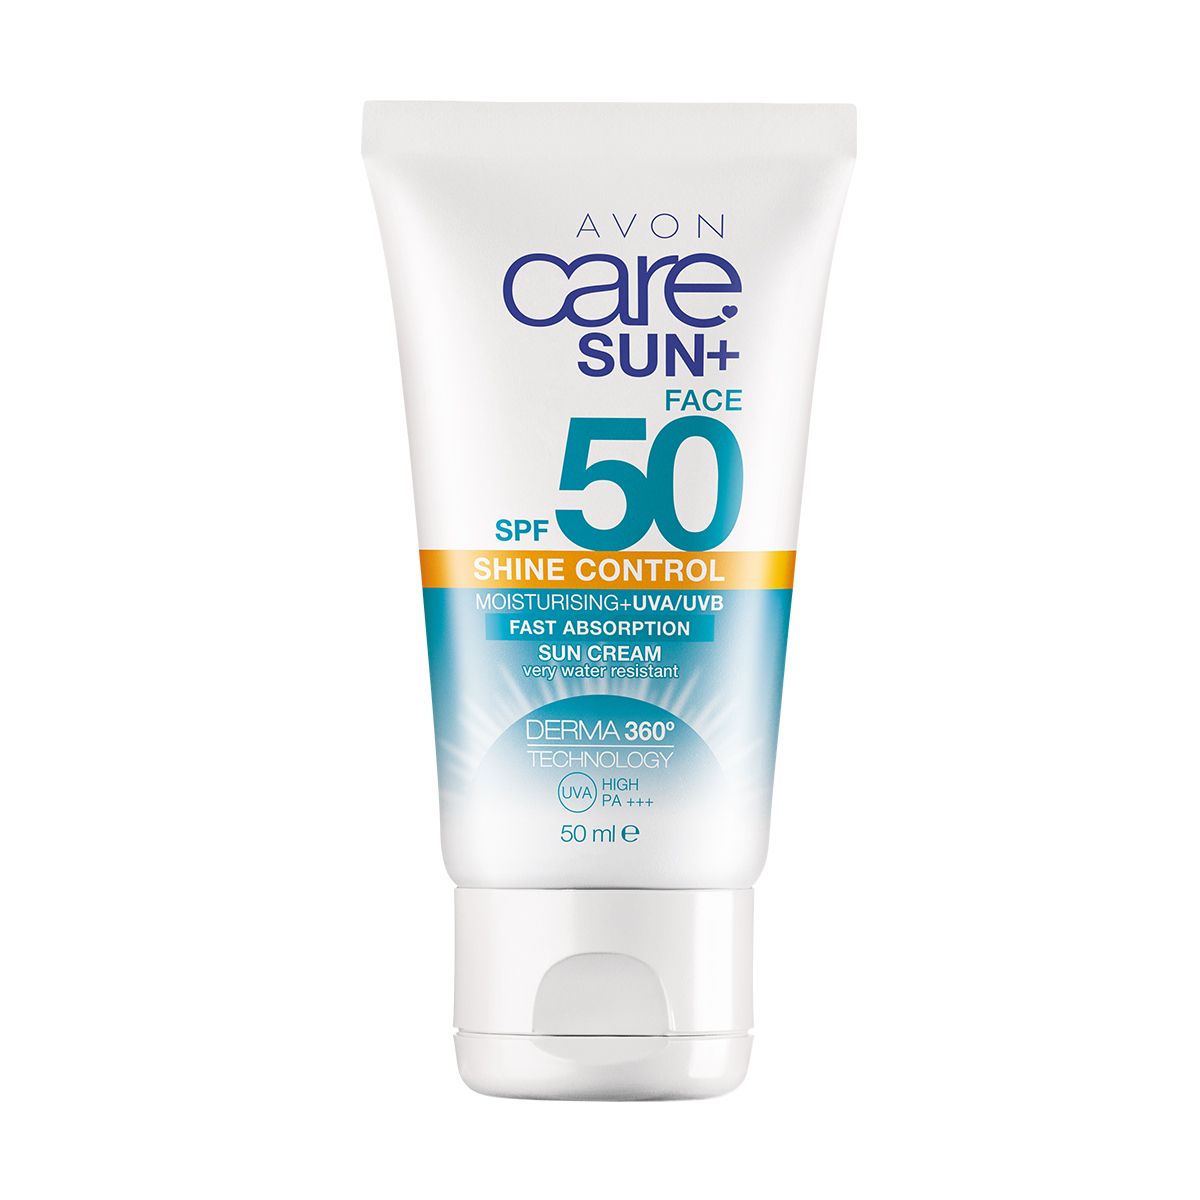 Avon Care Sun+ Parlamayı Önleyen Nemlendirici Güneş Koruyucu Yüz Kremi SPF50 50ml